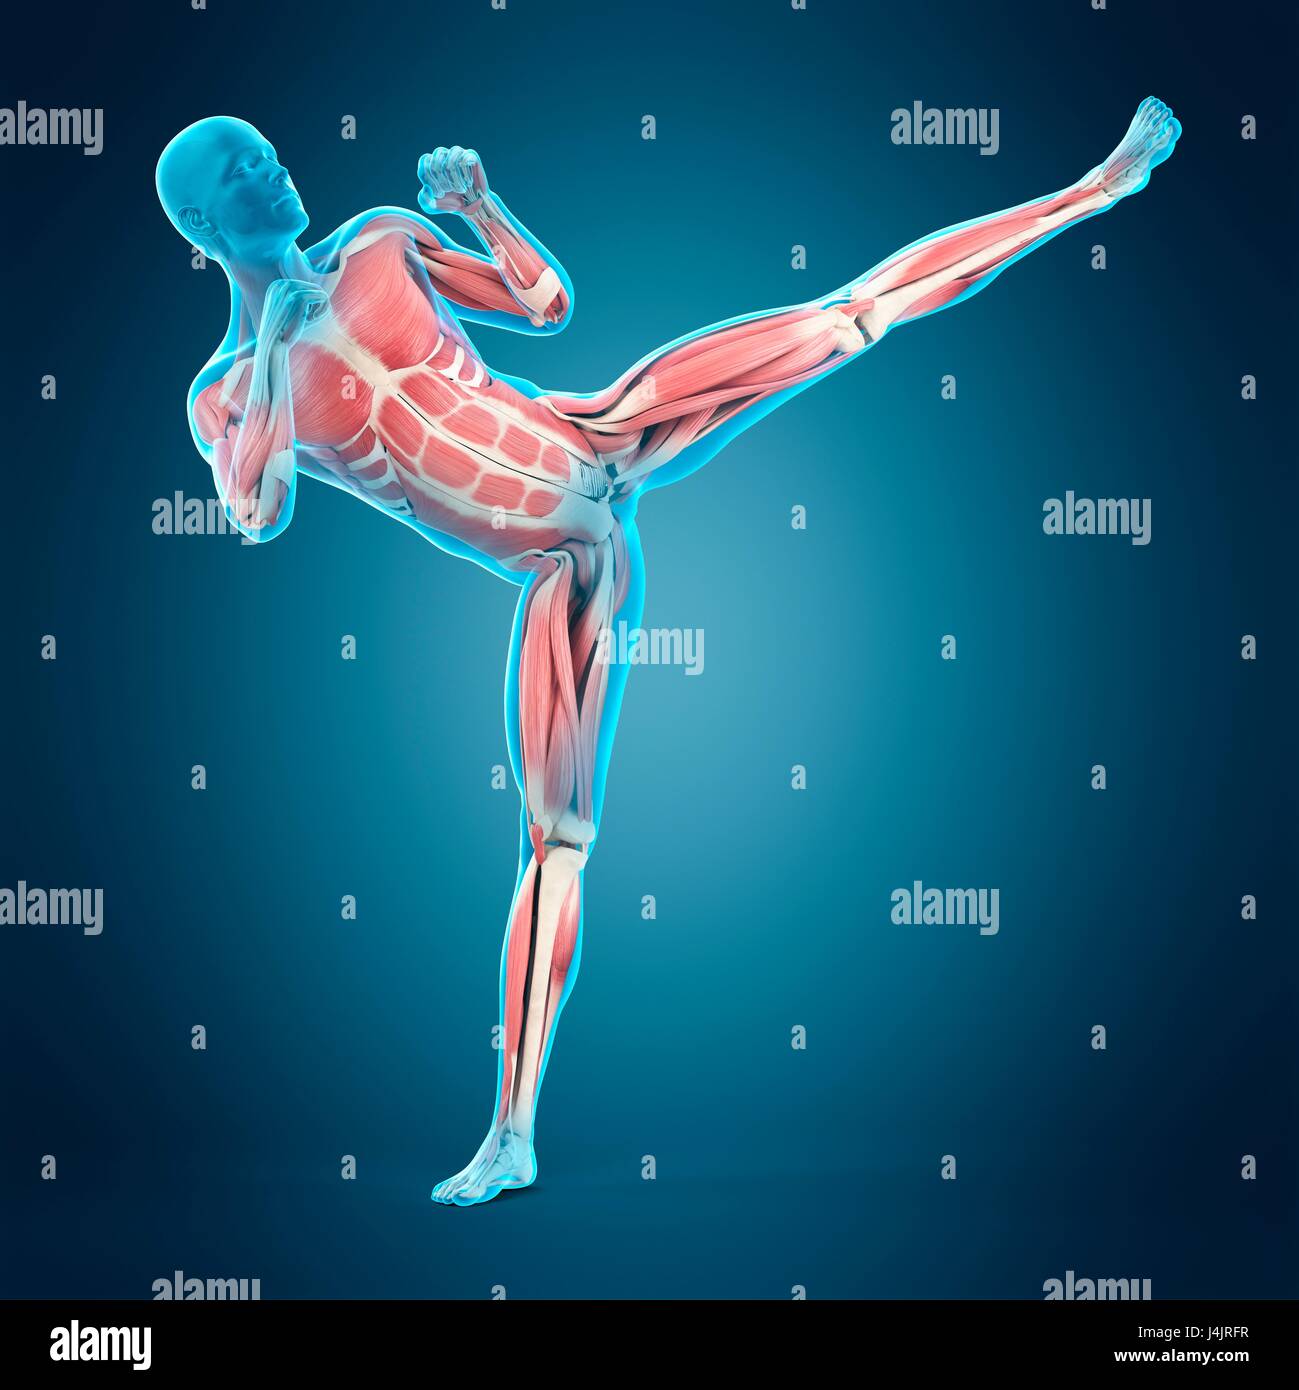 La structure musculaire de la personne faisant high kick, illustration. Banque D'Images